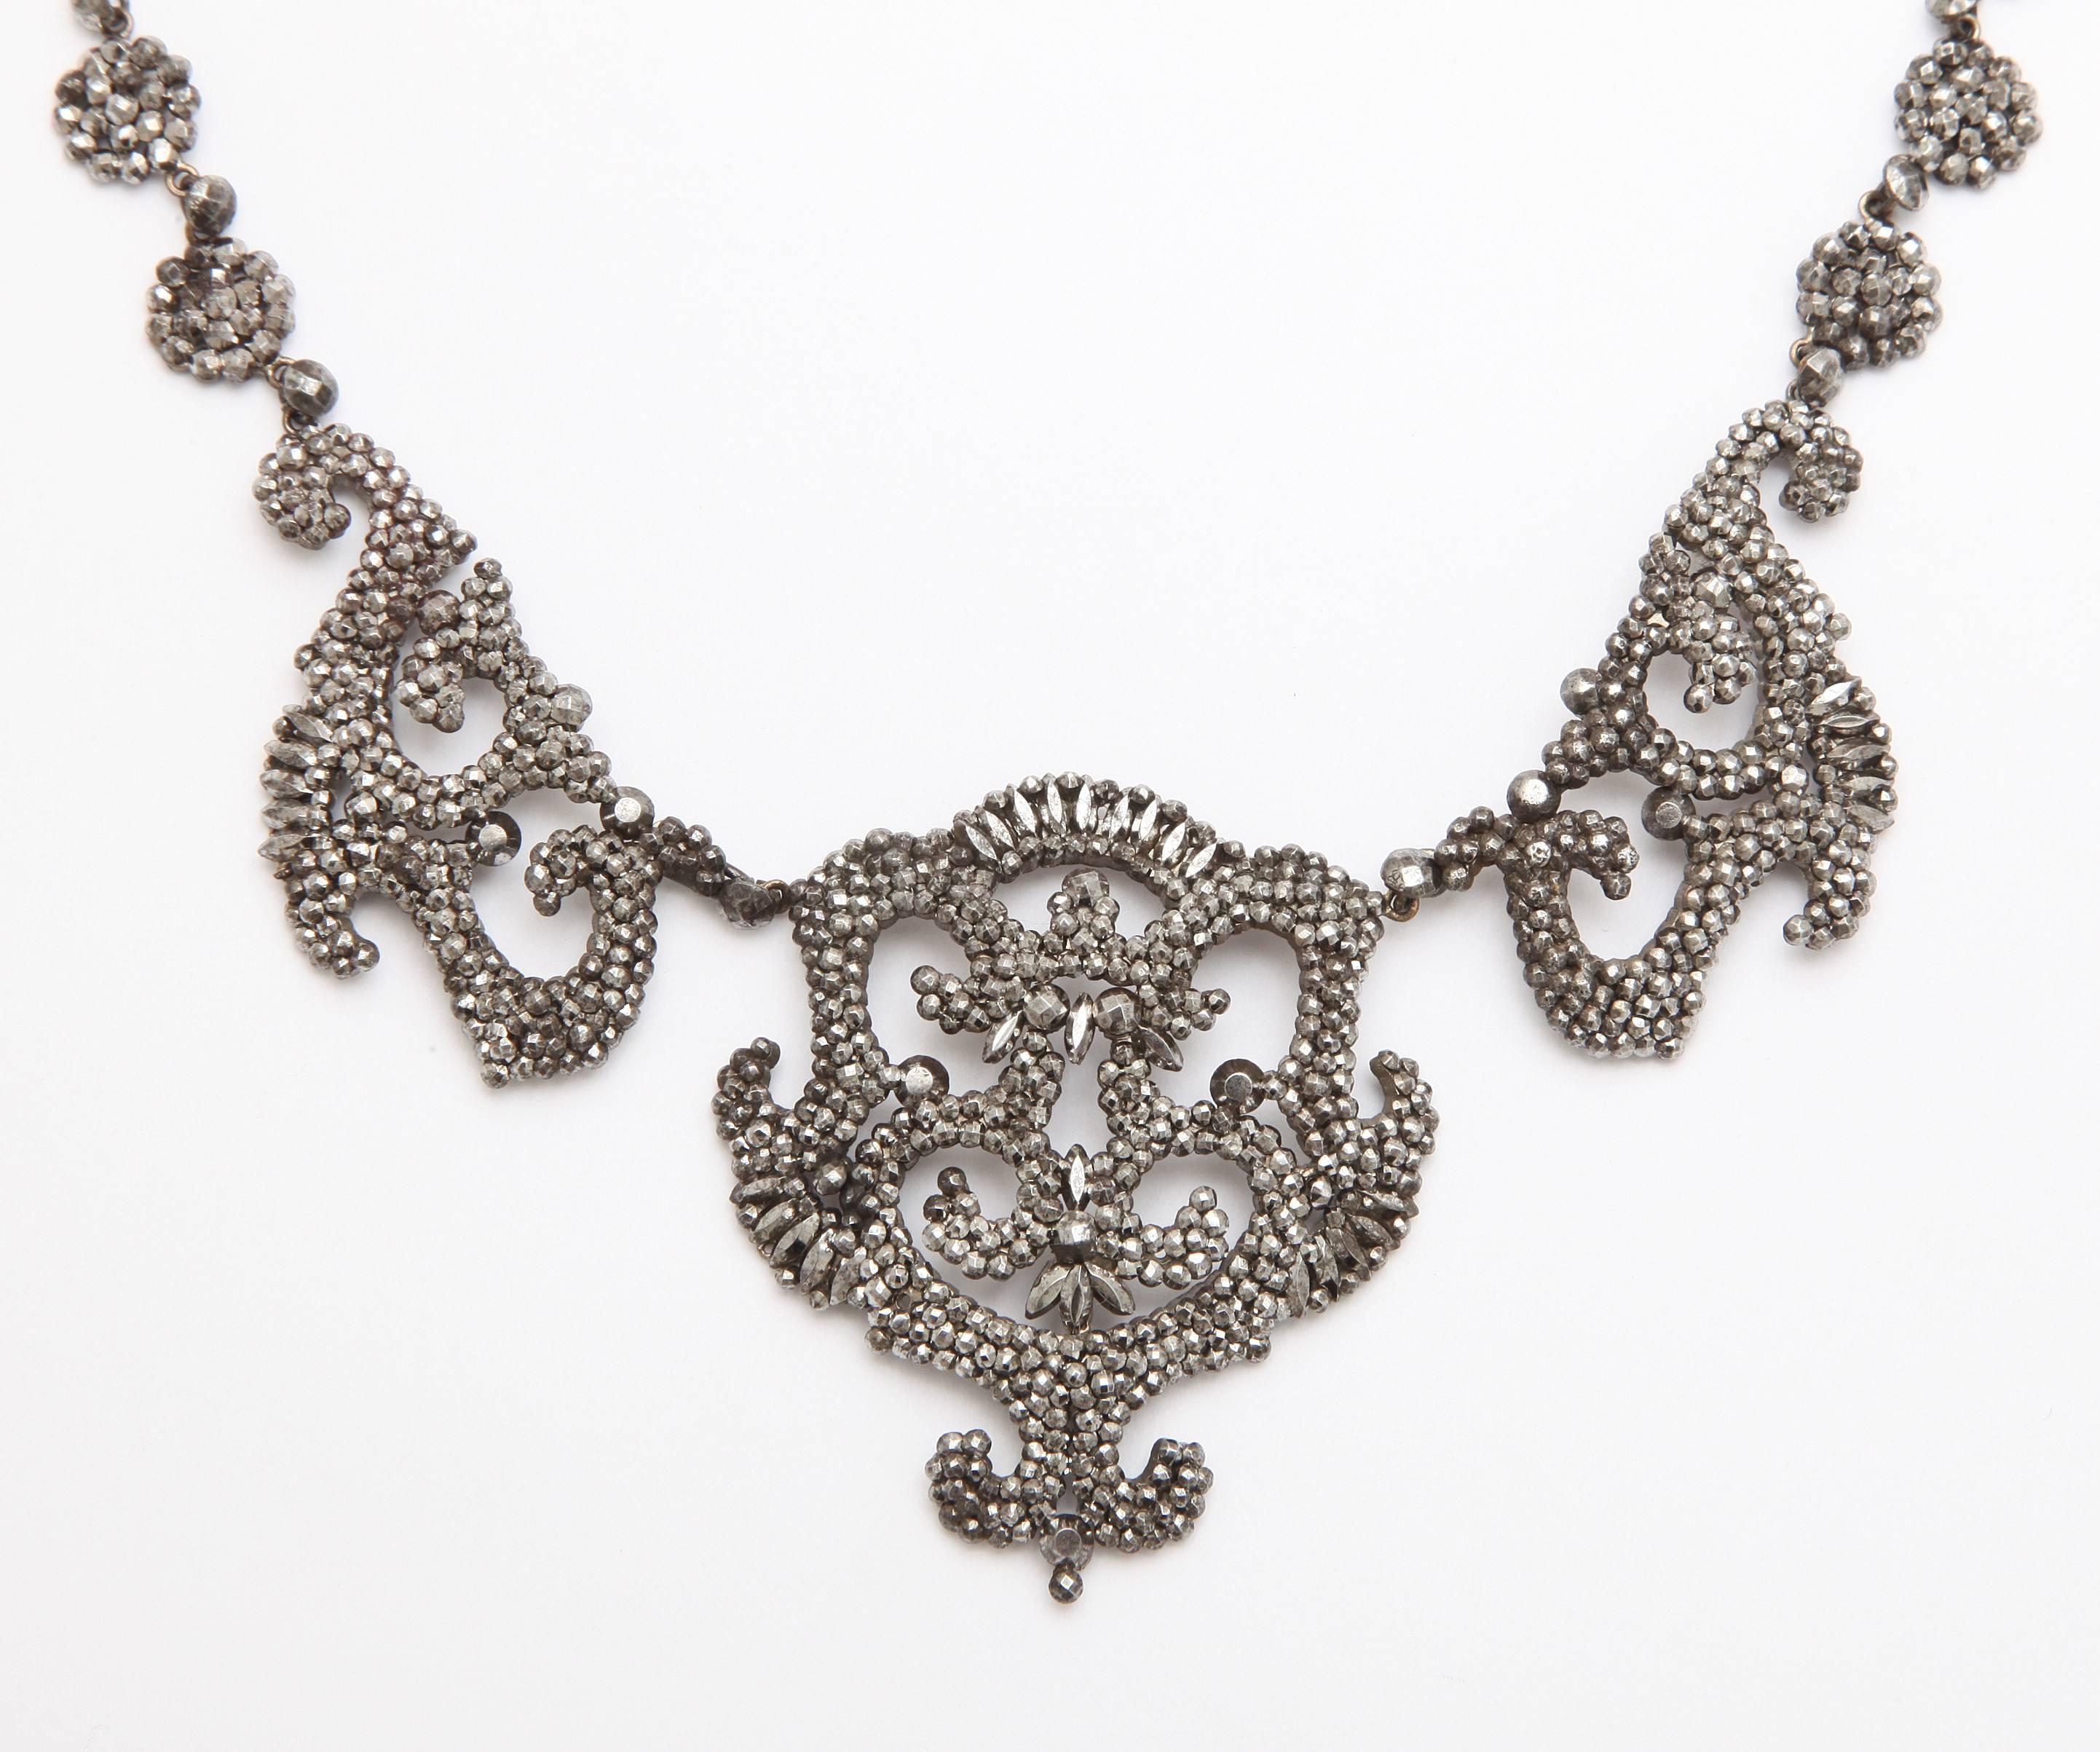 Couronnement du design, ce collier en acier taillé brille comme des diamants, à la lumière disponible, comme il le faisait à l'origine au début des années 1800. Sert les occasions habillées ou les chemises en jean et blue jeans en apportant un sens